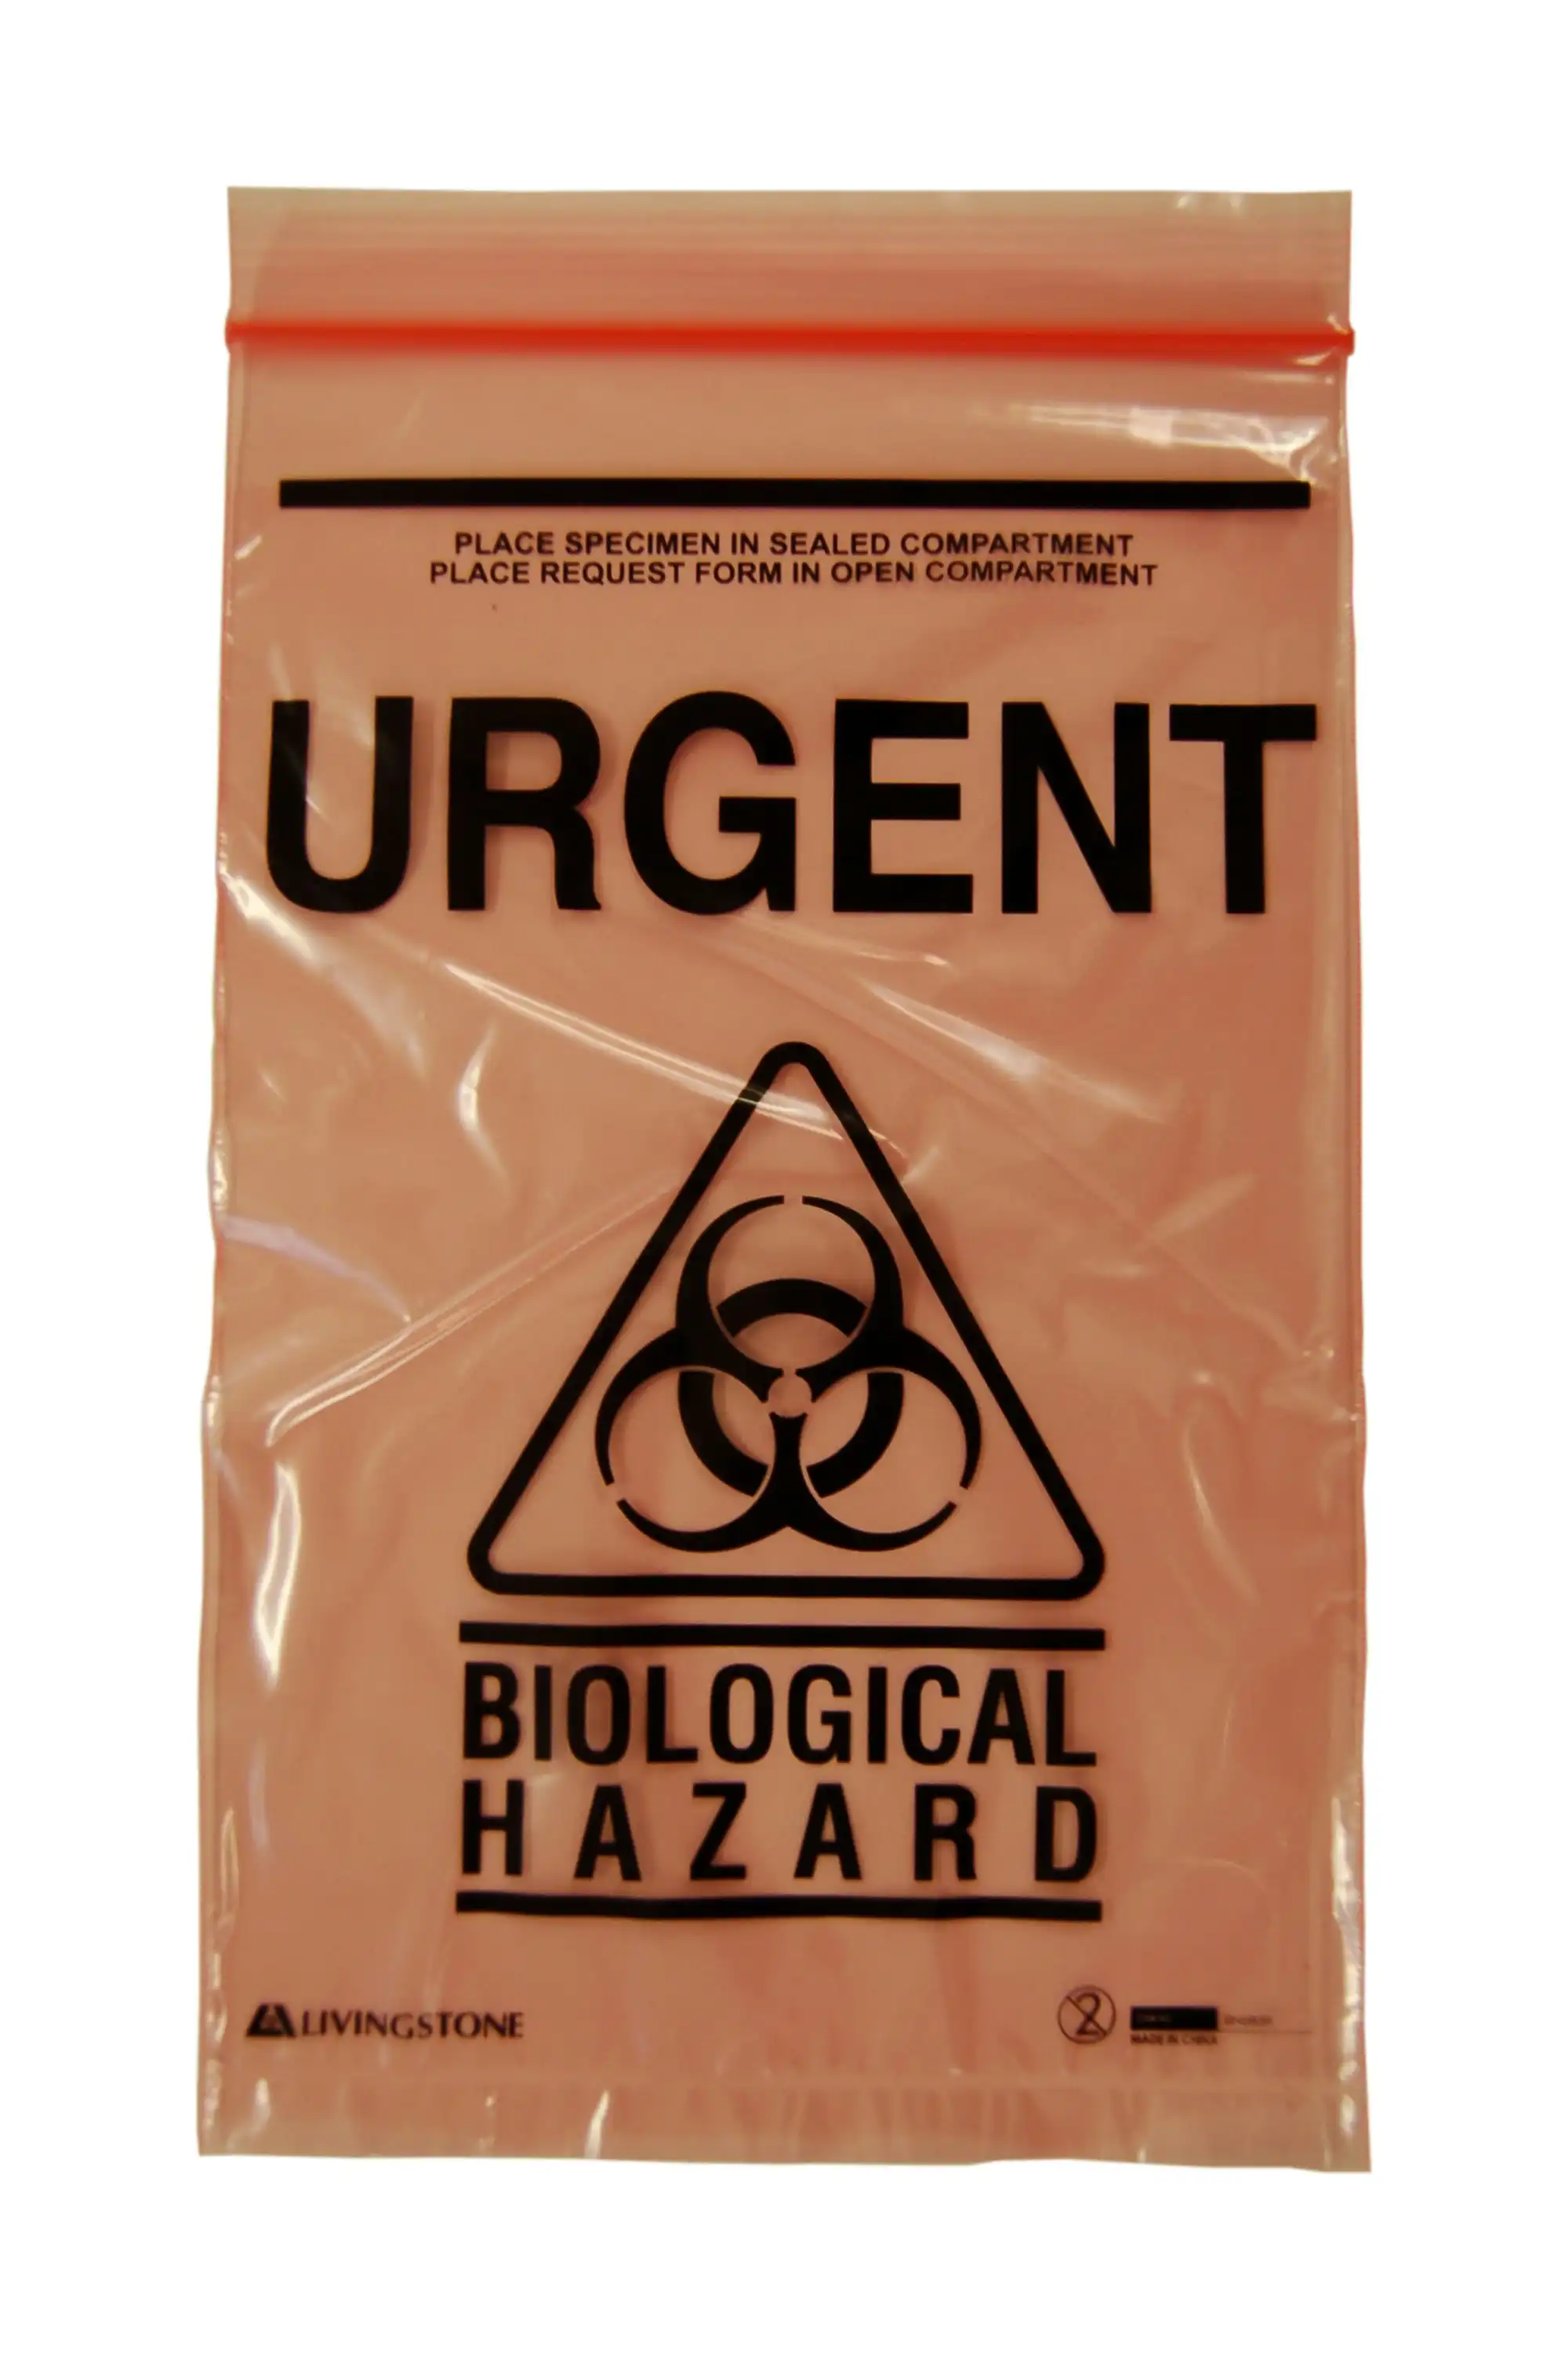 Livingstone Biohazard Specimen Bag,16x24.5cm,3-Ply,2 Compt,Zip Compt,2-Ply,45um,Pouch Compt,1-Ply,32um,w/ Urgent Label Red Tint,2000/Ctn